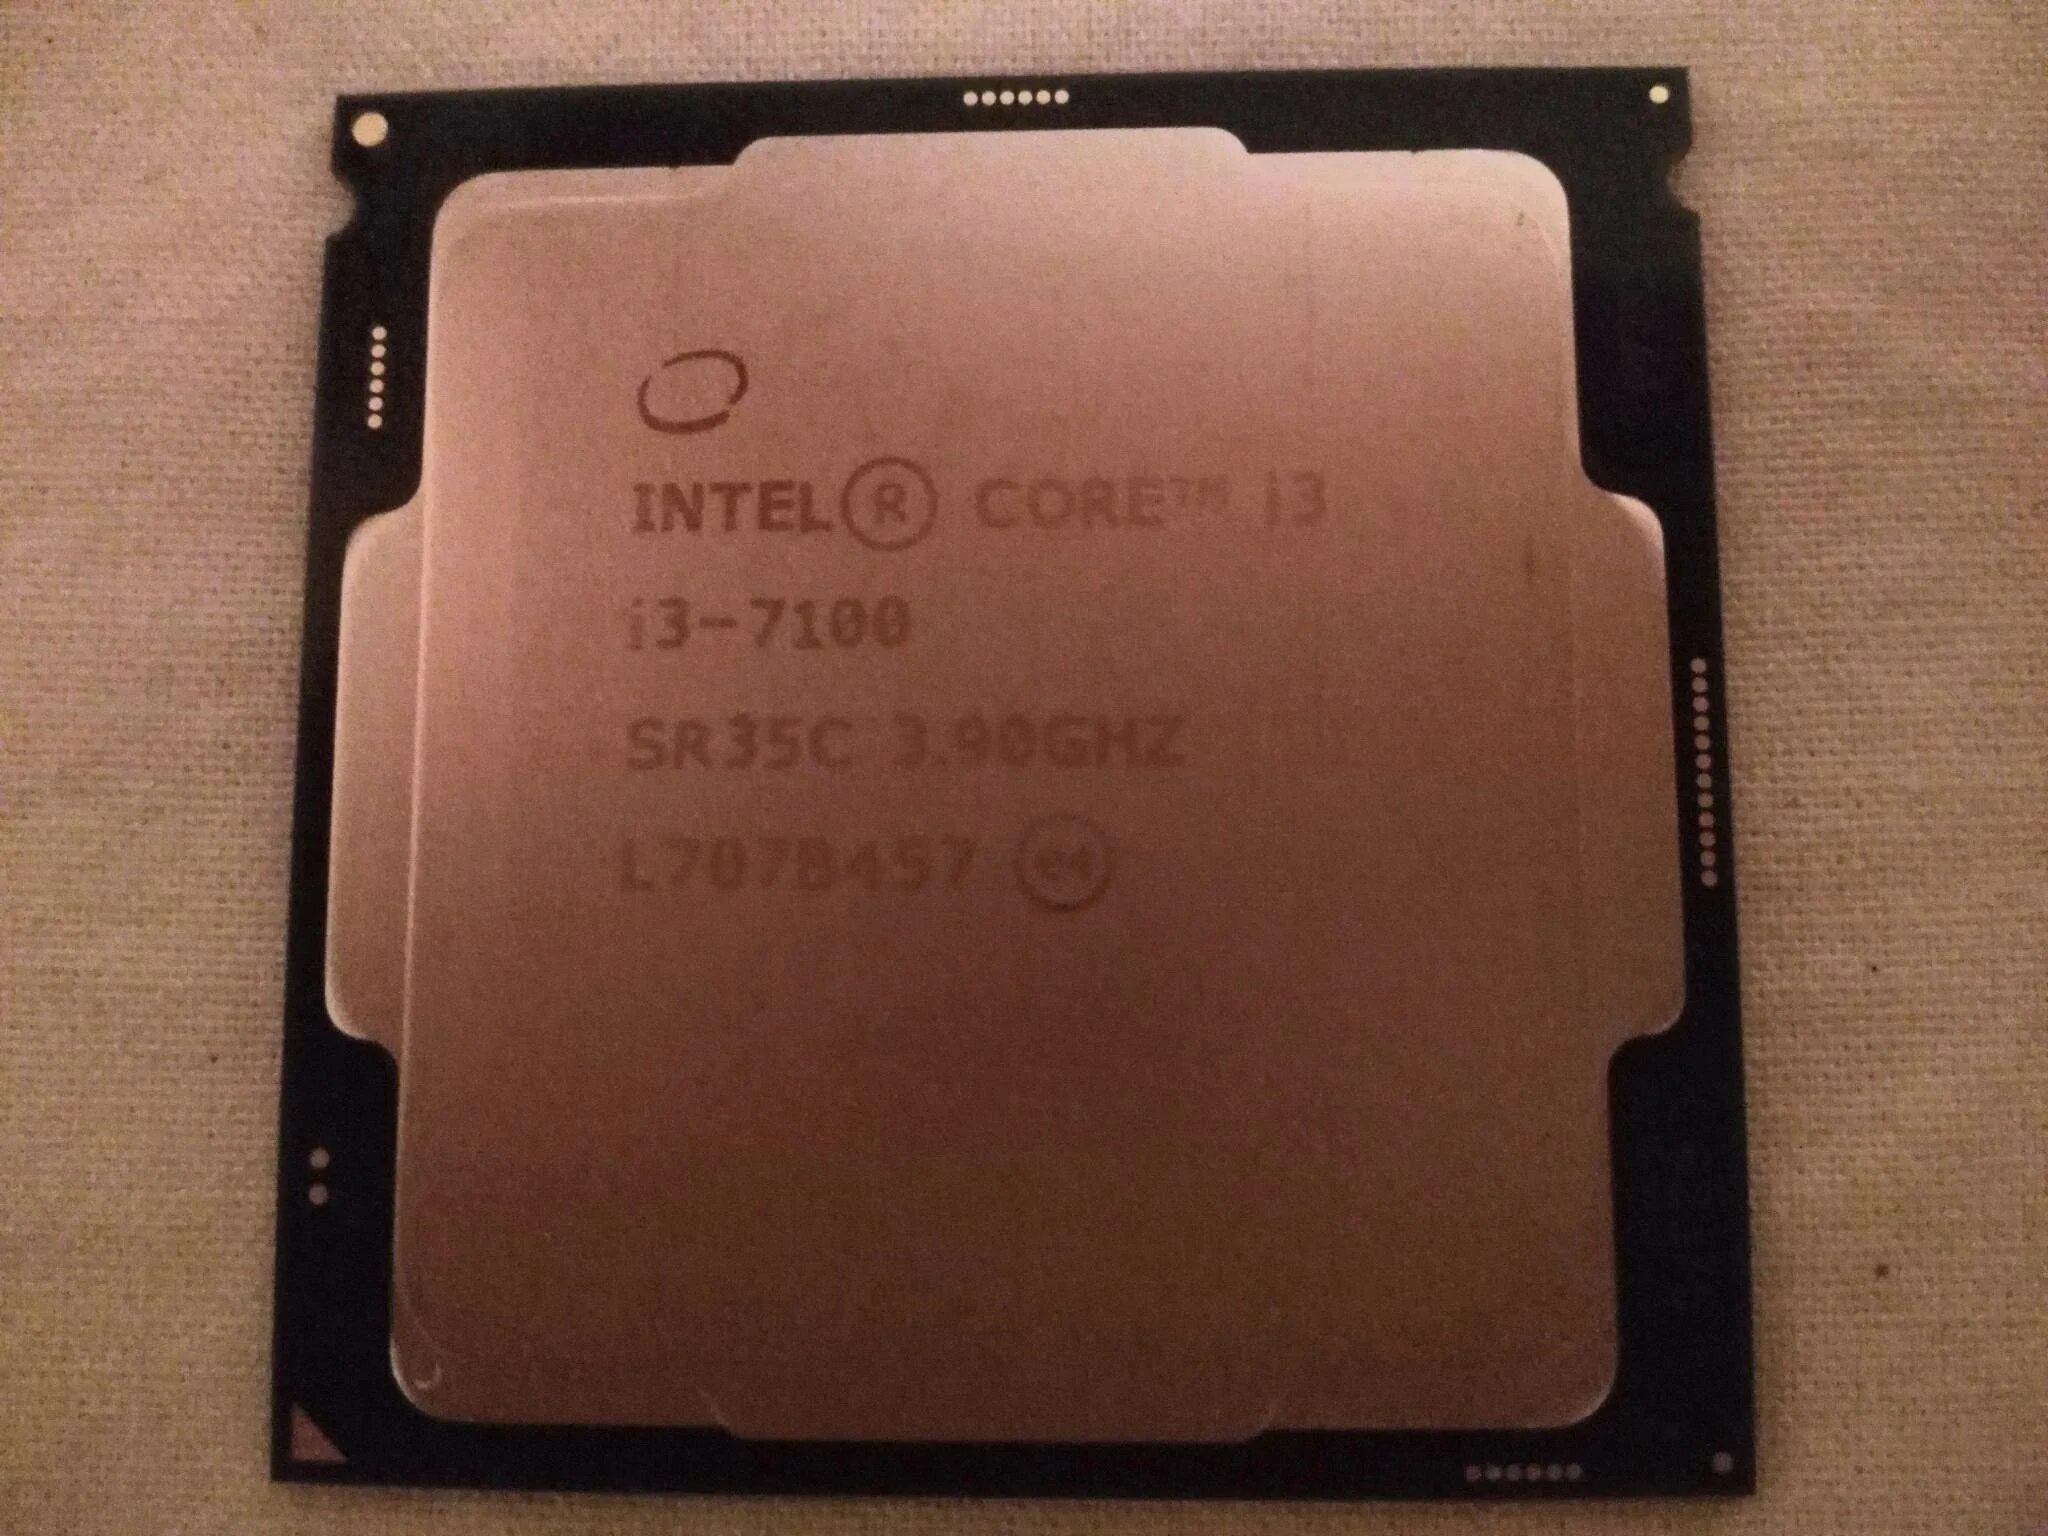 Интел 7100. Core i3 7100. Intel i3-7100. Intel Core i3 7100 CPU. Intel Core i3 7100 3.90GHZ LGA 1151.